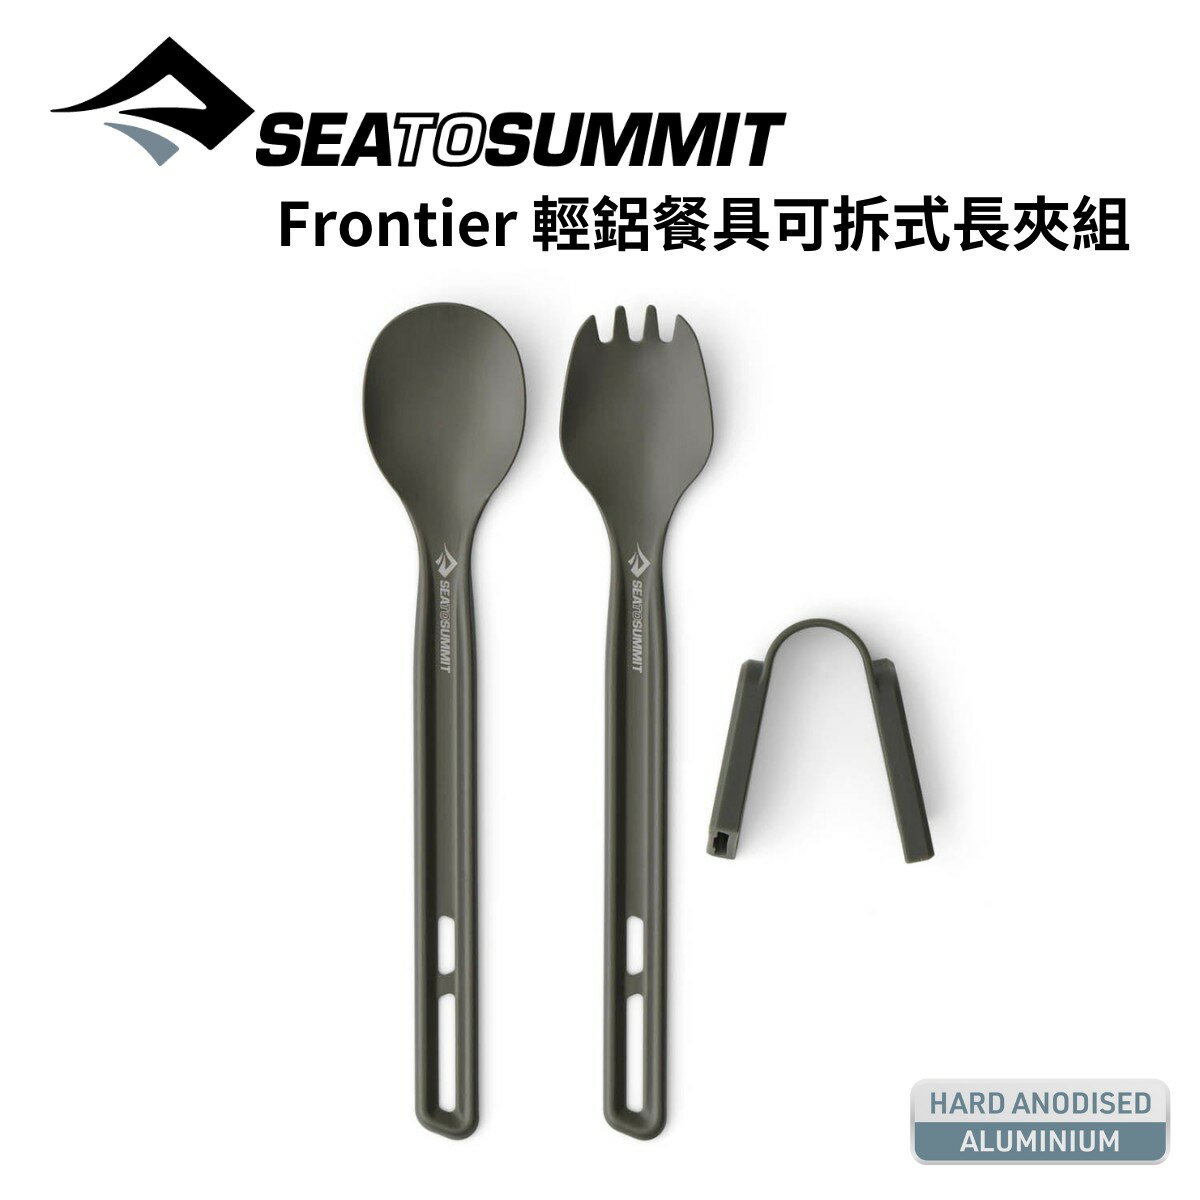 【Sea to Summit】Frontier 輕鋁餐具可拆式長夾組 Frontier Ultralight Cutlery Set